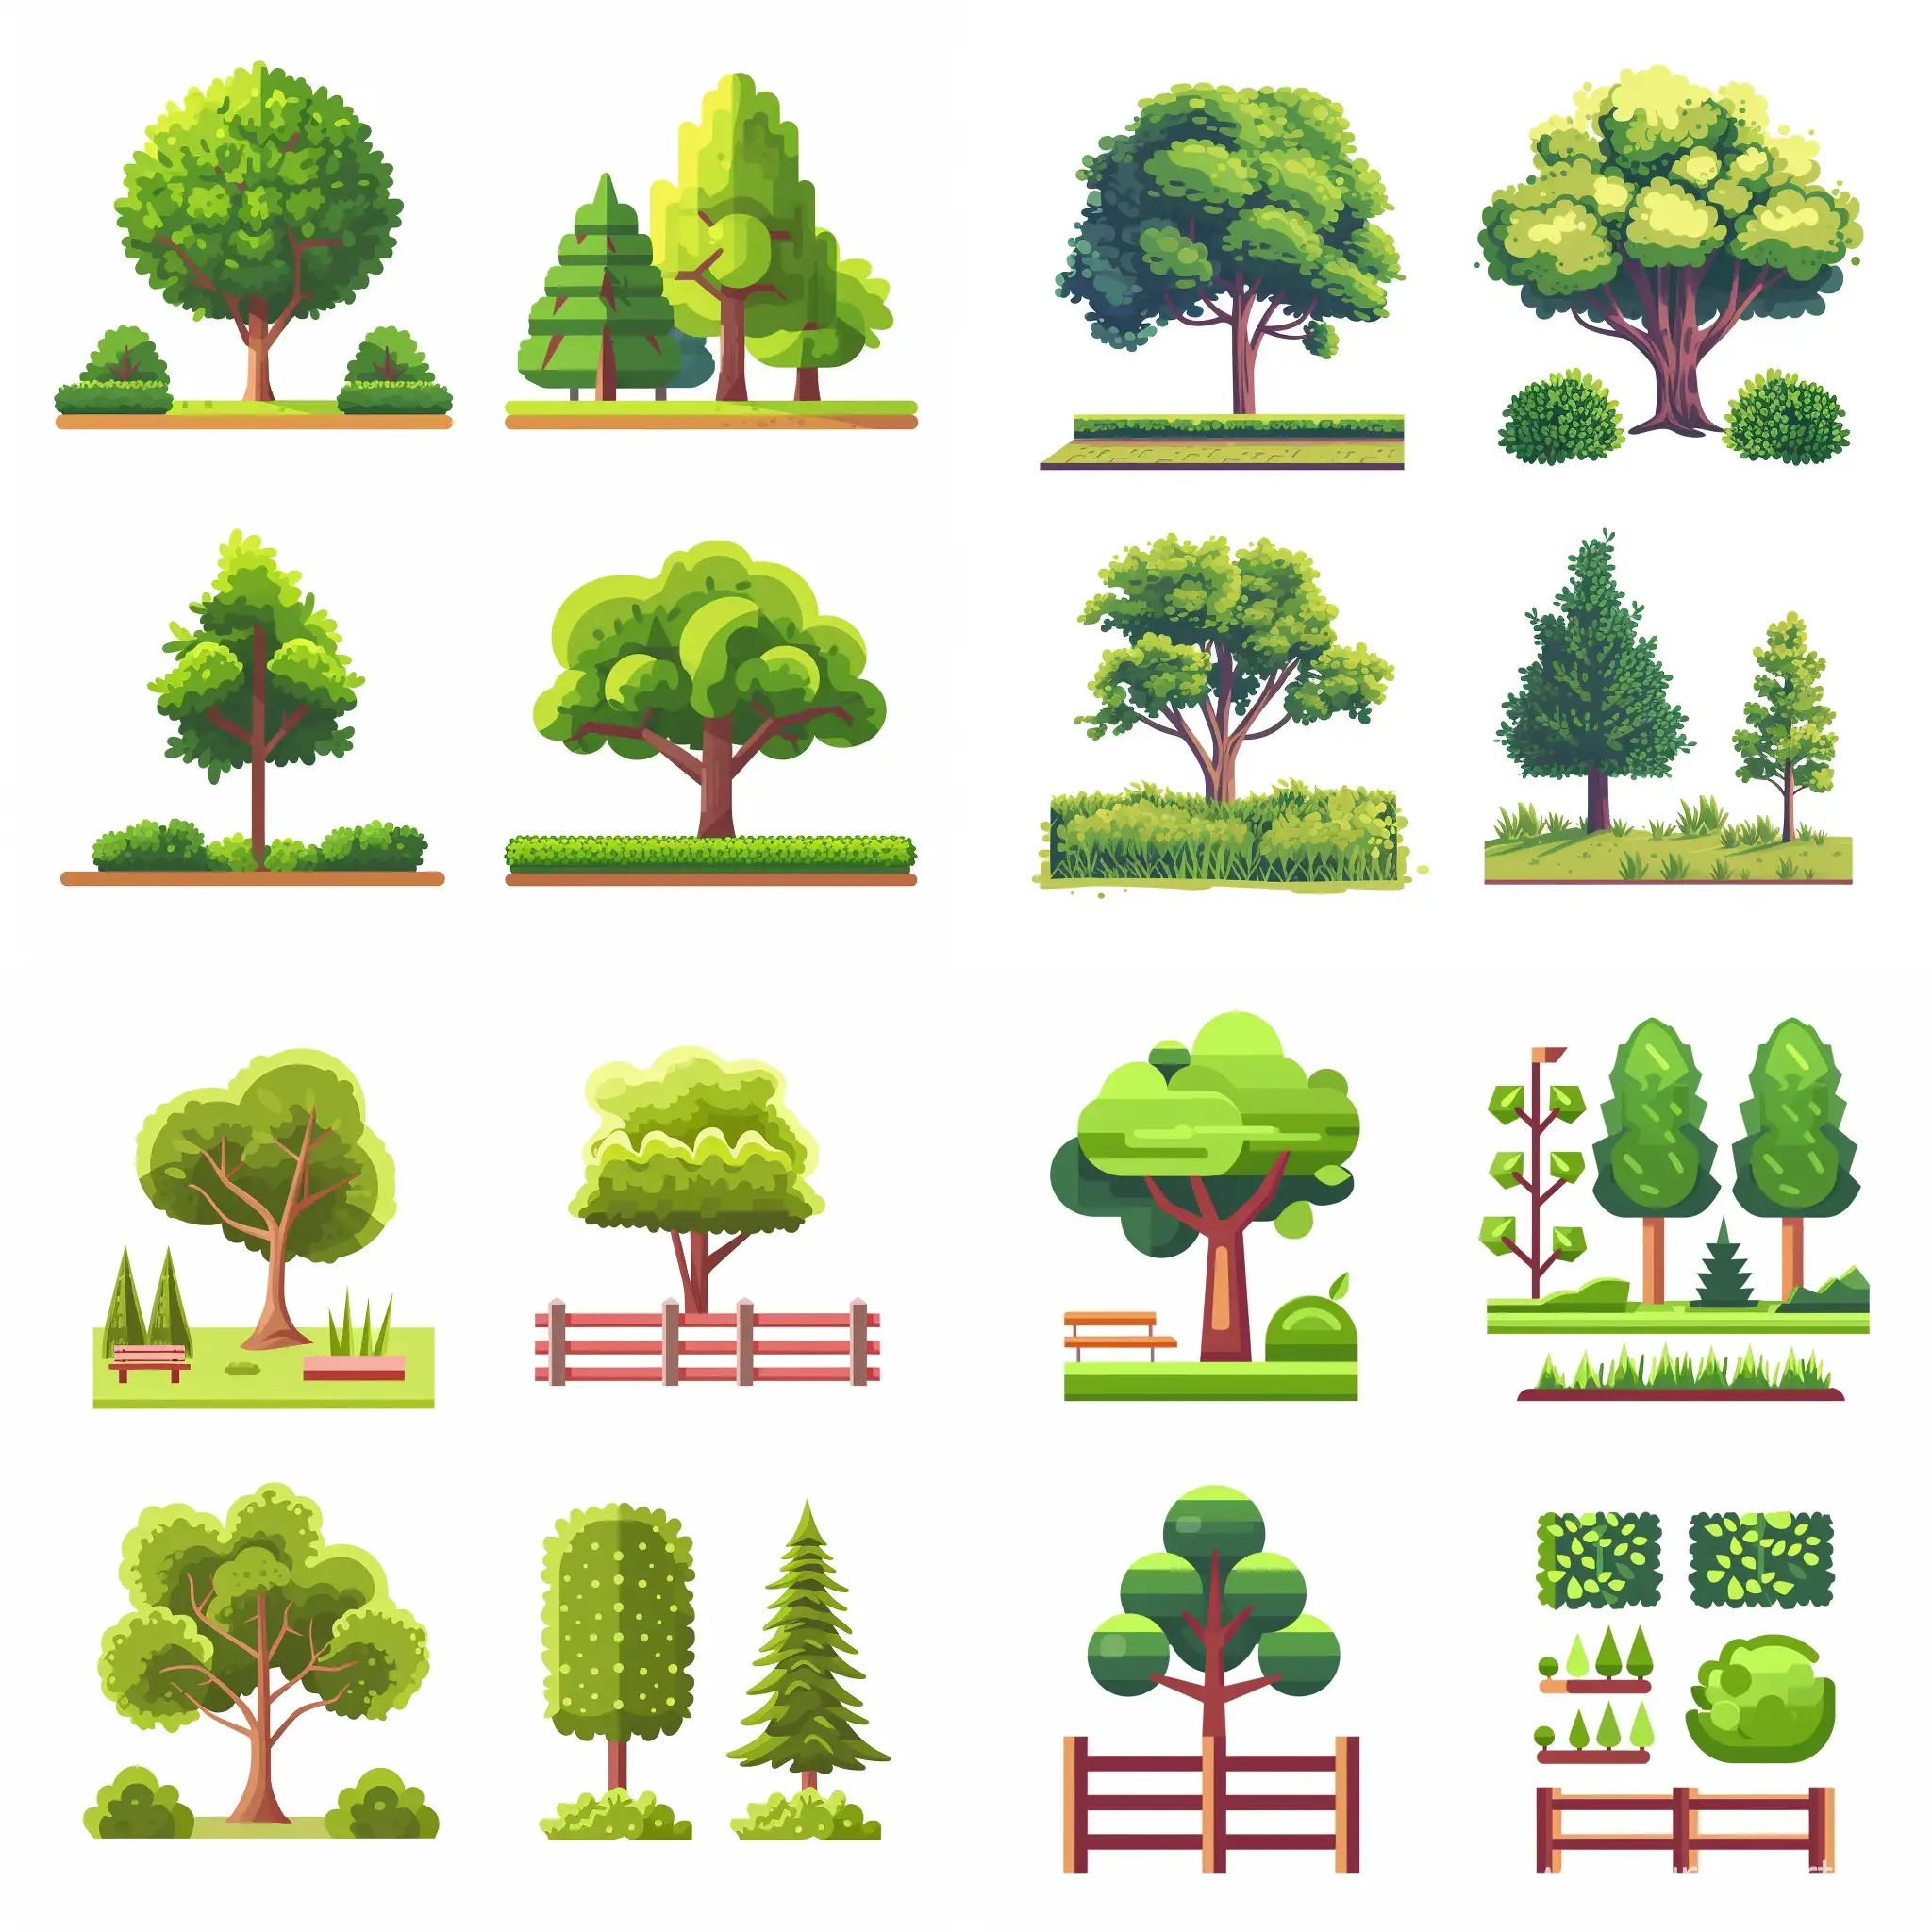 Сделай 4 иконки в одном стиле на белом фоне: На 1 иконке - парки и скверы; на 2 - границы растительности; на 3 - деревья; на 4 - кустарники